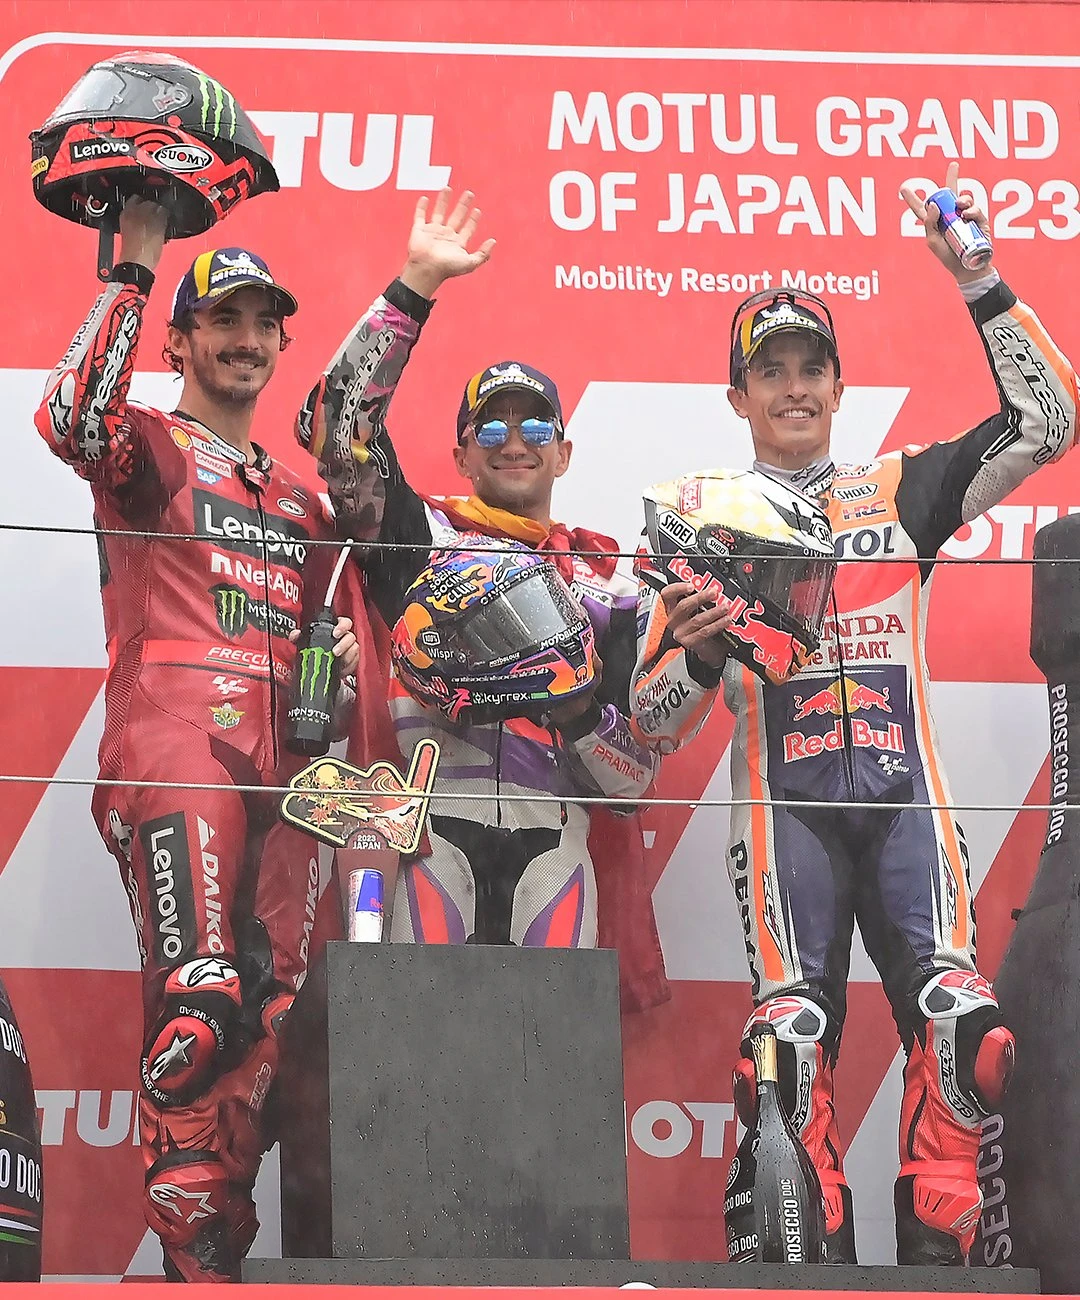 MotoGP Japonya | Yarışta 2 kırmızı bayrak çıktı, kazanan Jorge Martin oldu gallery image 10